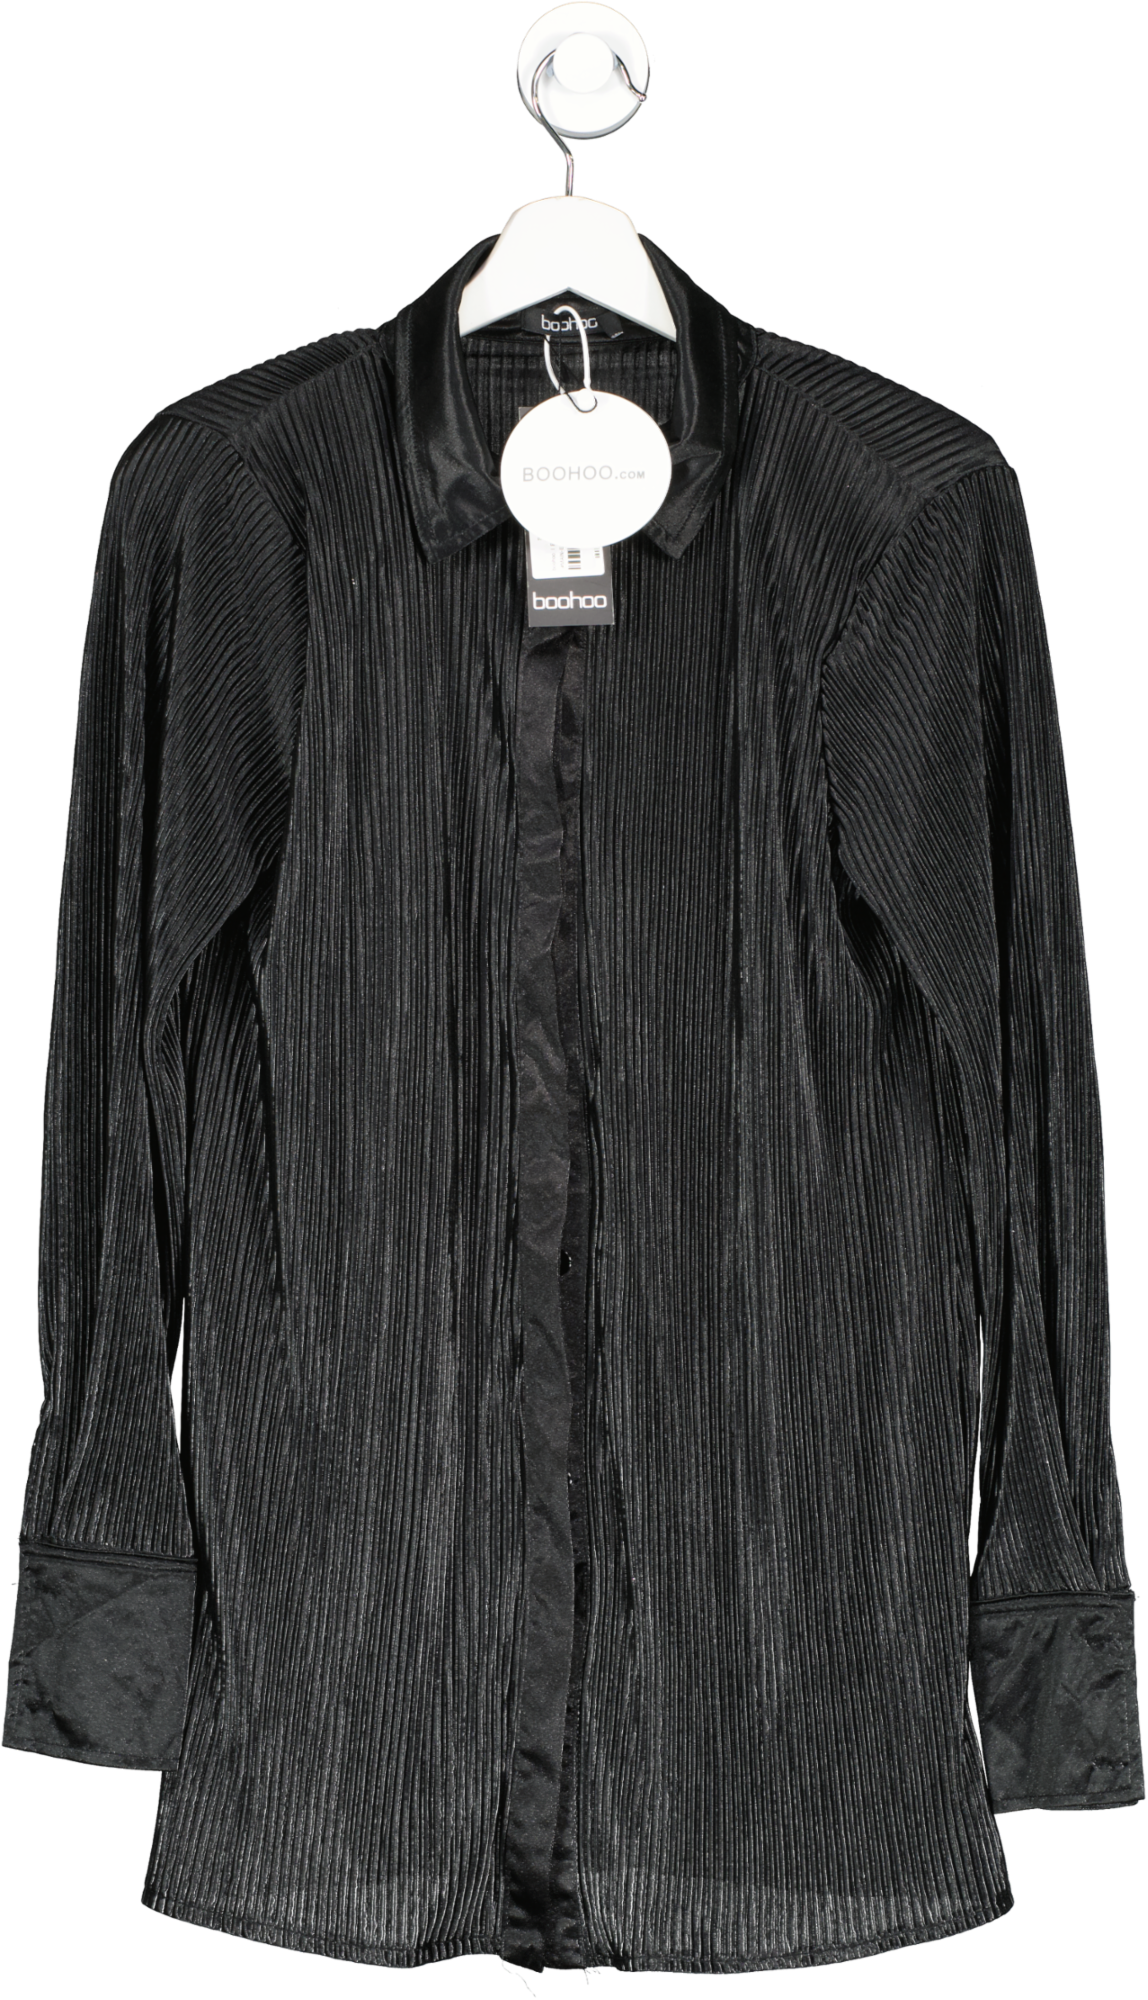 boohoo Black Satin Plisse Oversized Shirt UK 8